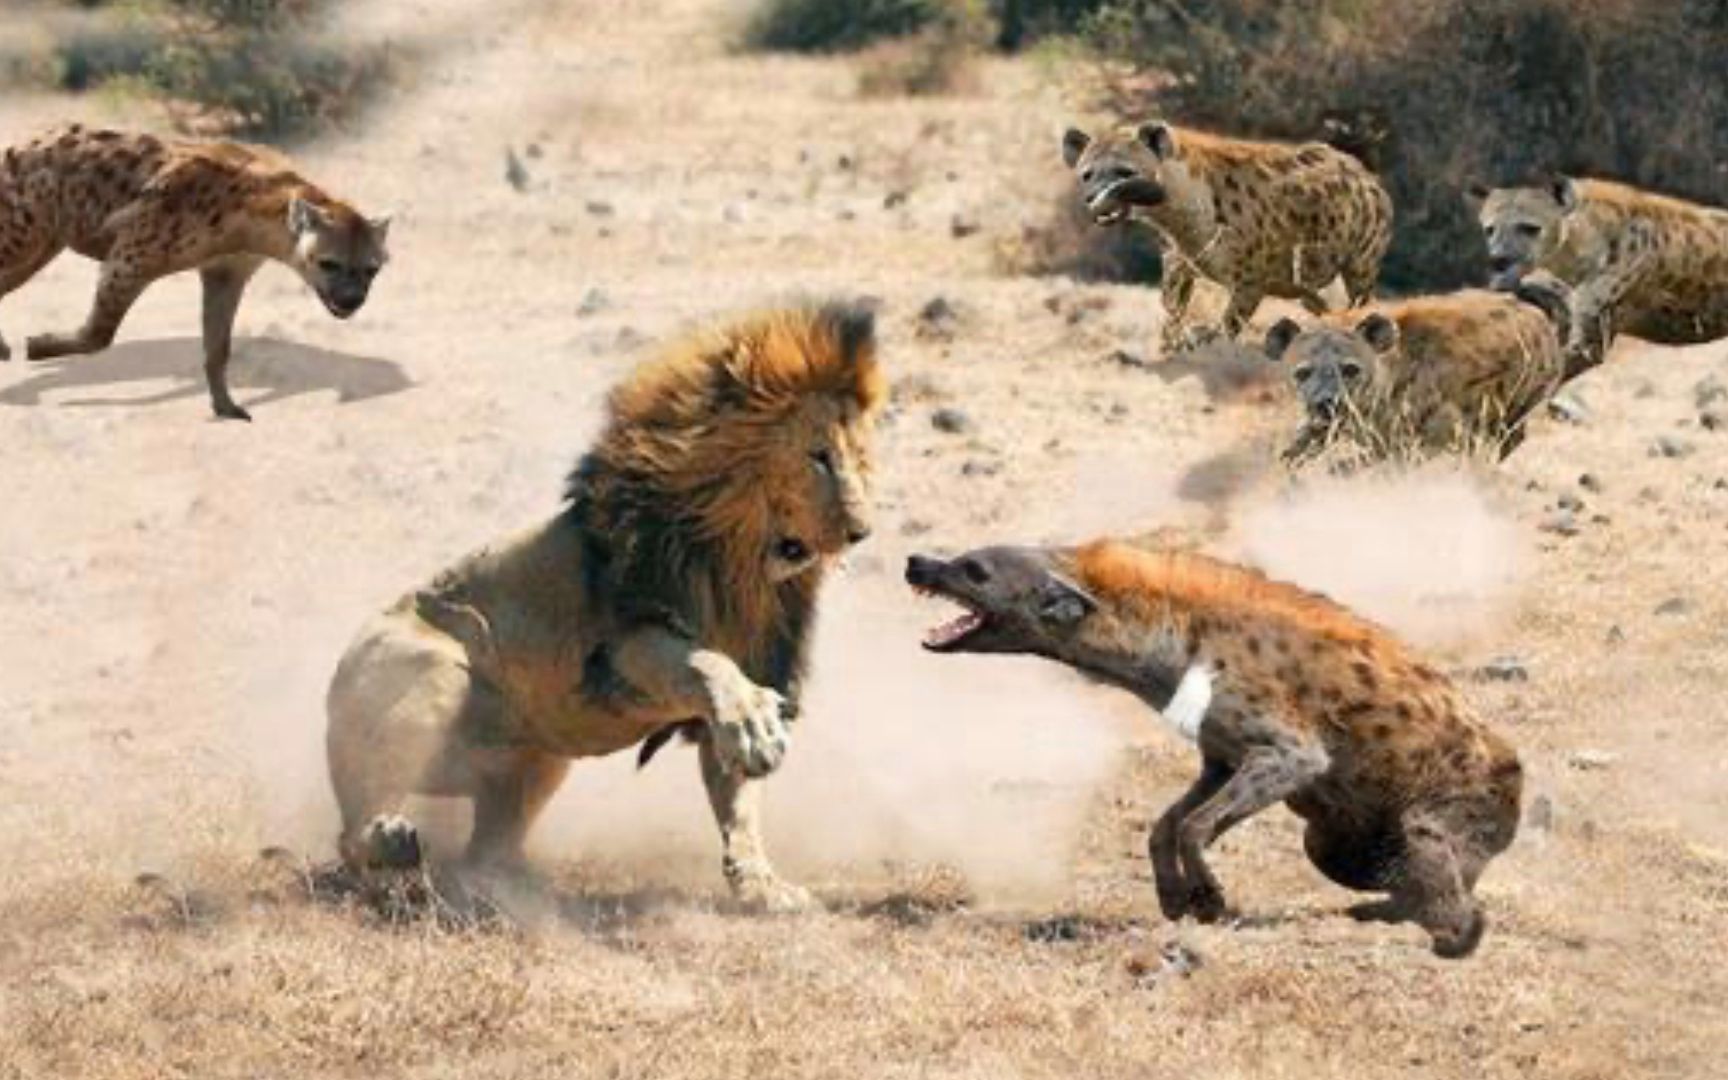 狮子与鬣狗大战:鬣狗攻击后门实在太损了,狮王怒把鬣狗撕成碎肉